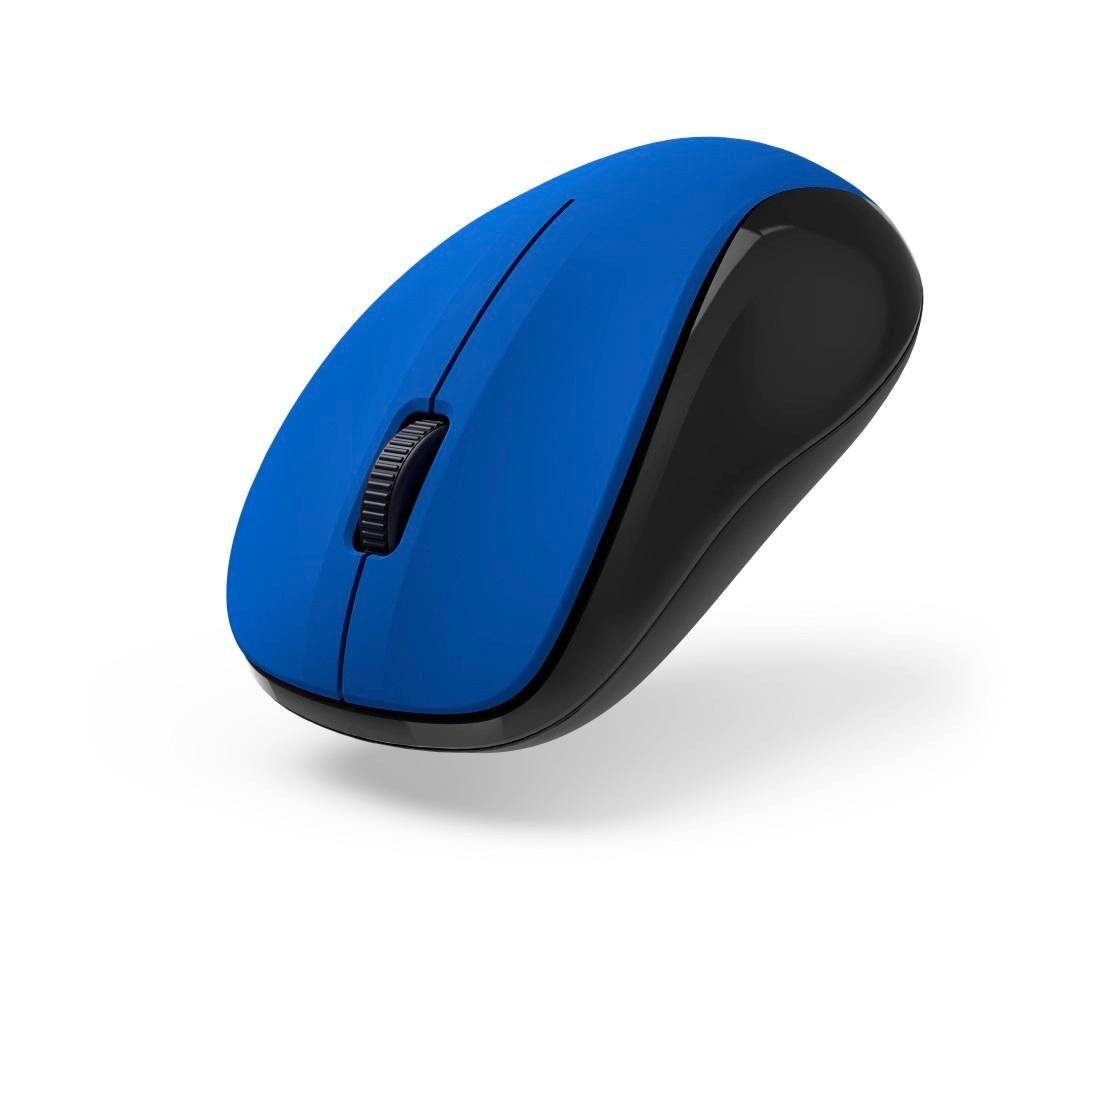 Hama V2", USB "MW-300 Maus Empfänger geräuschlos, 3 Optische blau Funkmaus Tasten